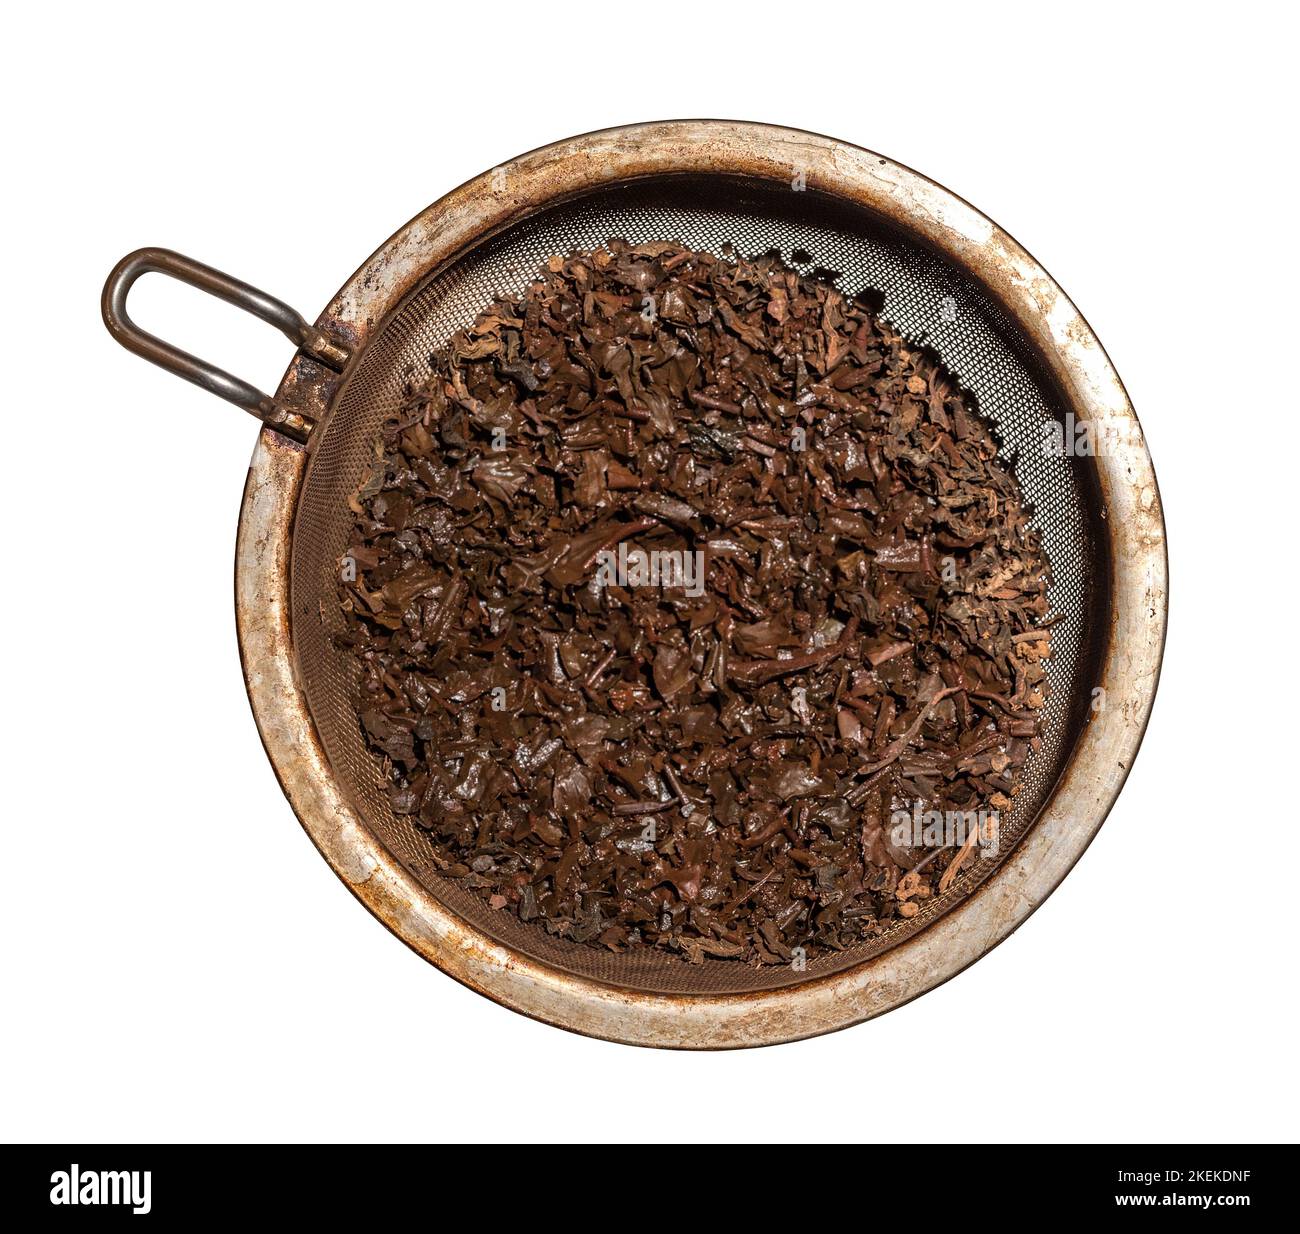 Gebraute, nasse Teeblätter in einem Metallsieb, isoliert vor weißem Hintergrund Stockfoto